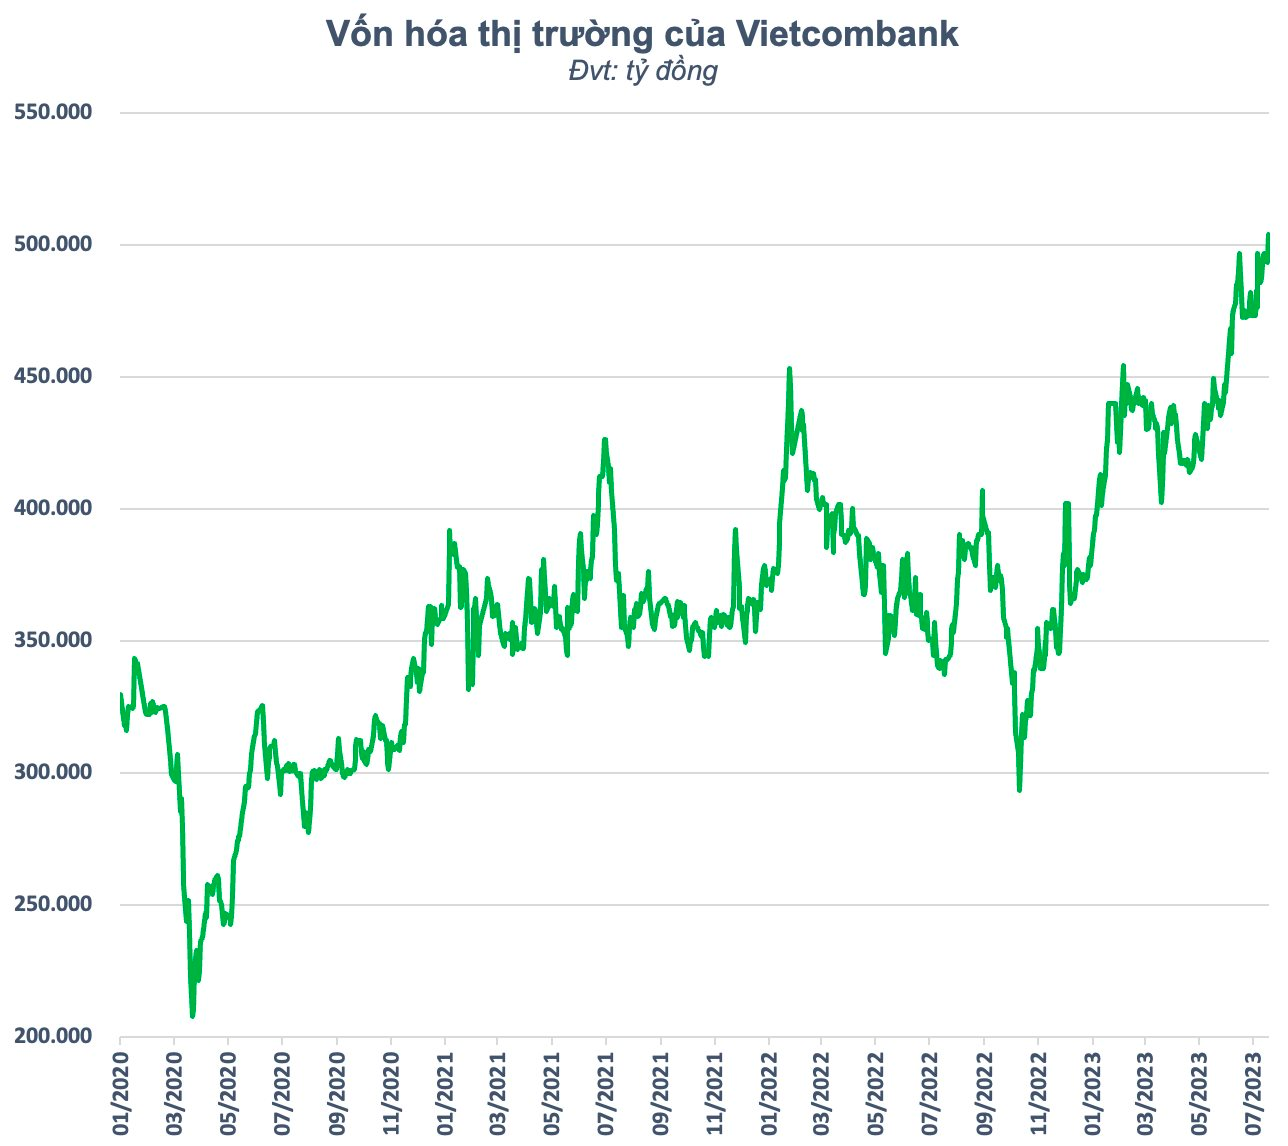 Vietcombank trở thành cổ phiếu đầu tiên vượt ngưỡng nửa triệu tỷ vốn hóa trong lịch sử chứng khoán Việt Nam - Ảnh 1.